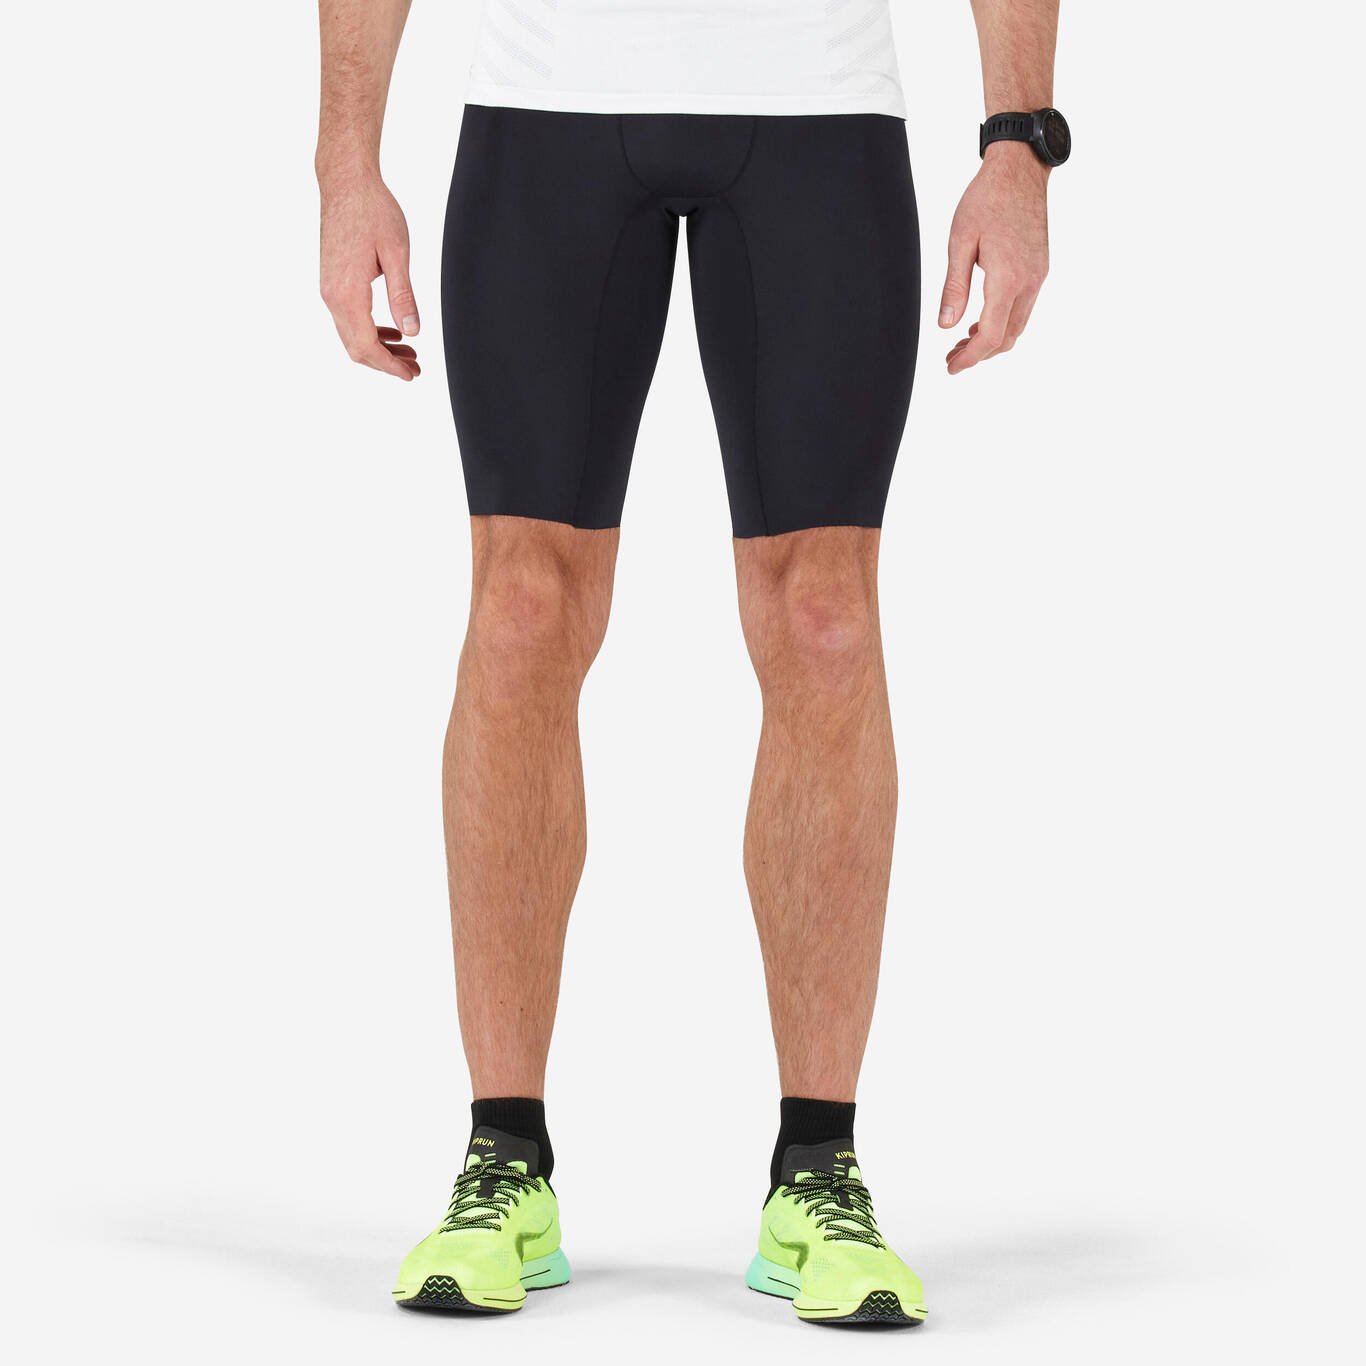 Men's Running Tight Shorts - black - Decathlon